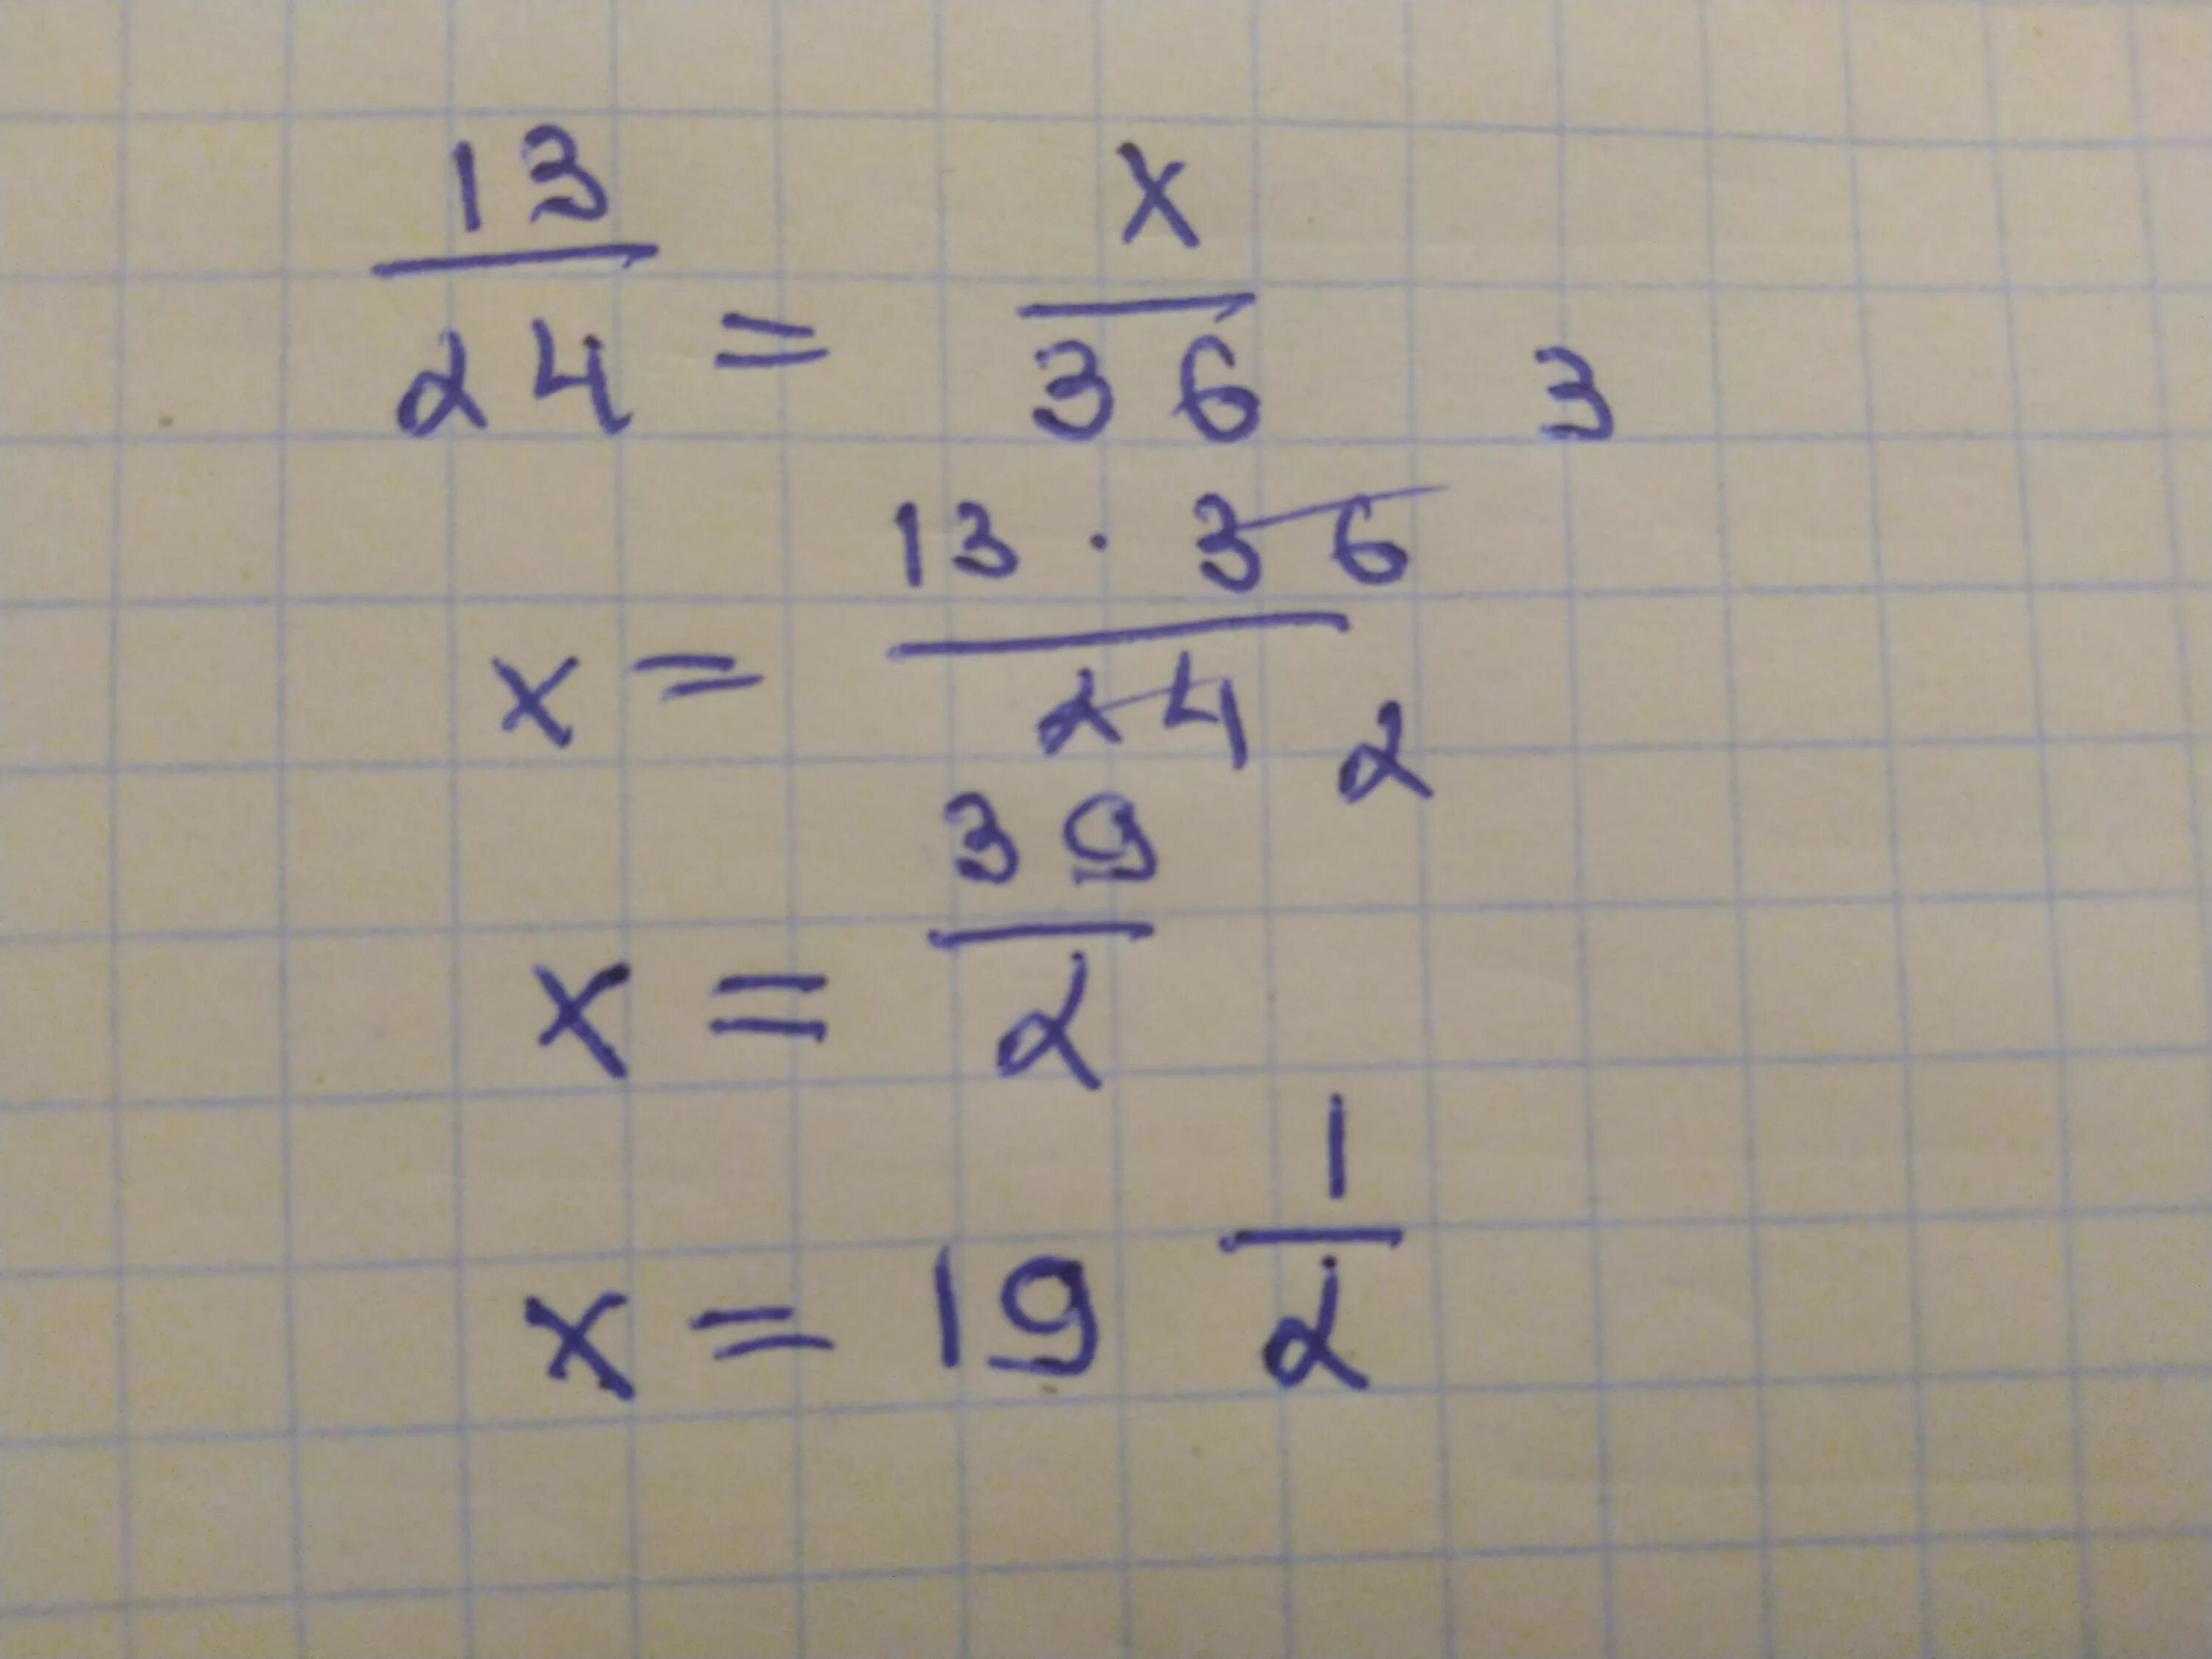 6 13 делить на 1. 13 2 Разделить на 24. 24 Разделить на 13. 13/24=X/36. 11 Поделённое на 13.